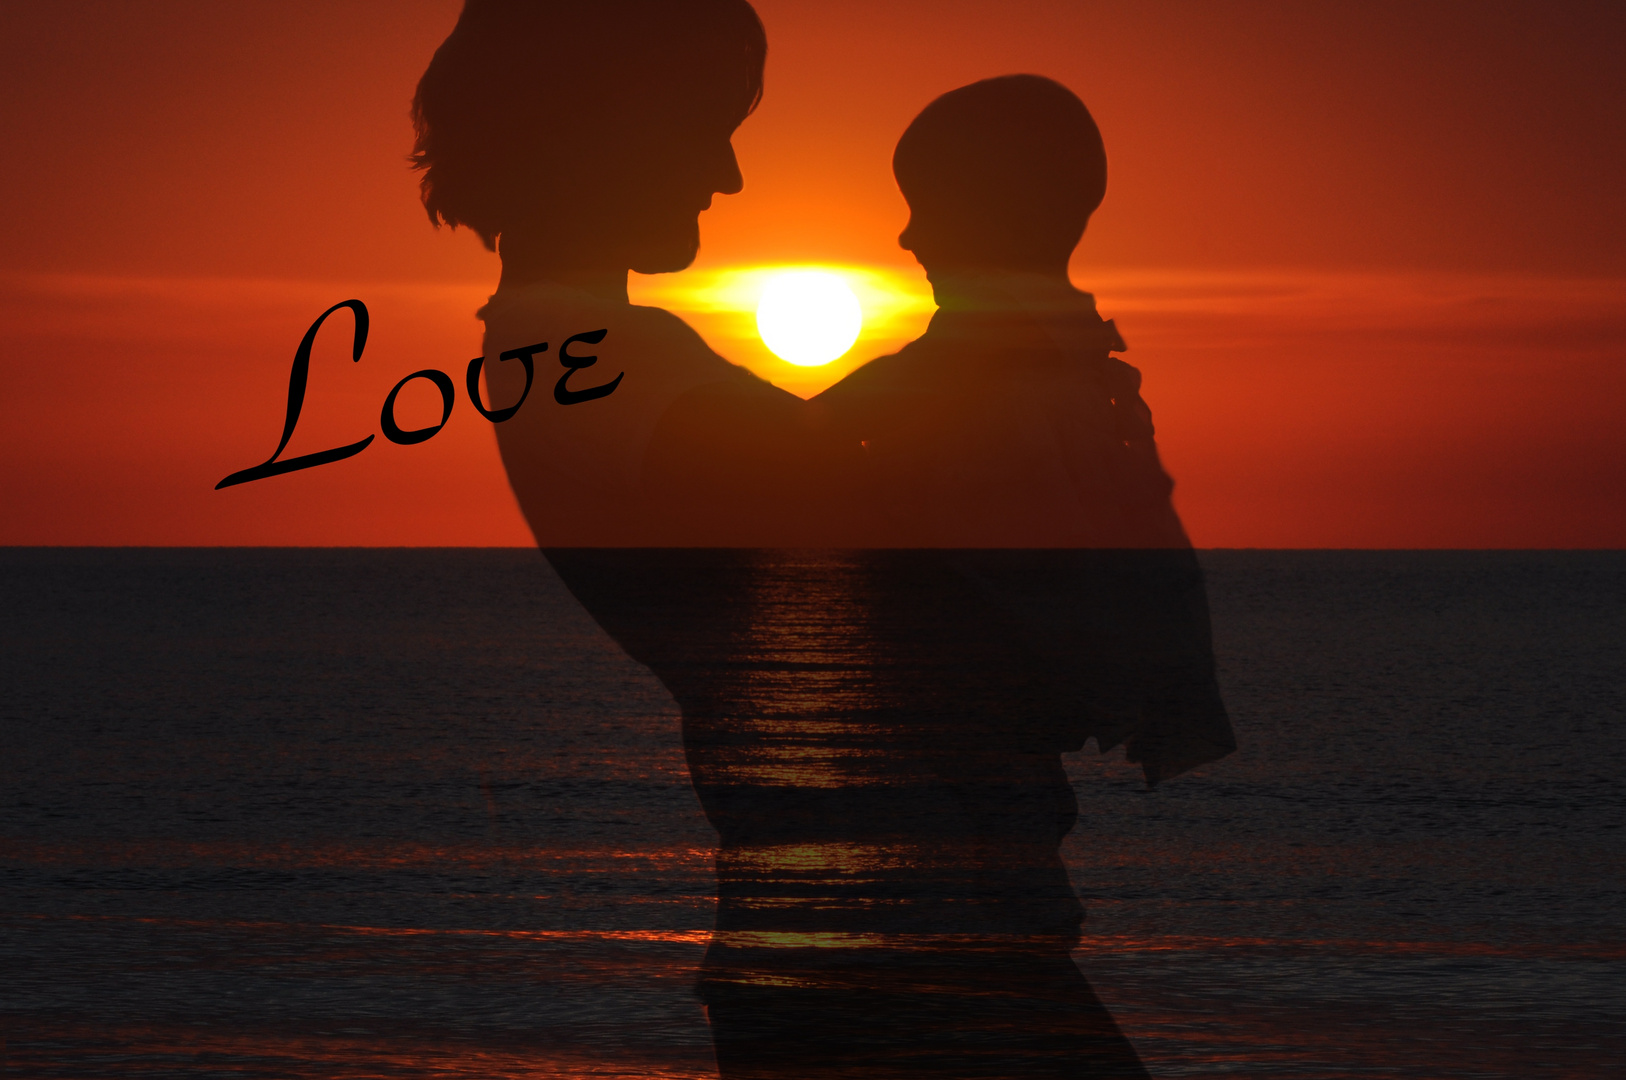 Love! Ist die Kraft der Sonne etwa vergleichbar mit der Liebe zum eigenen Kind?